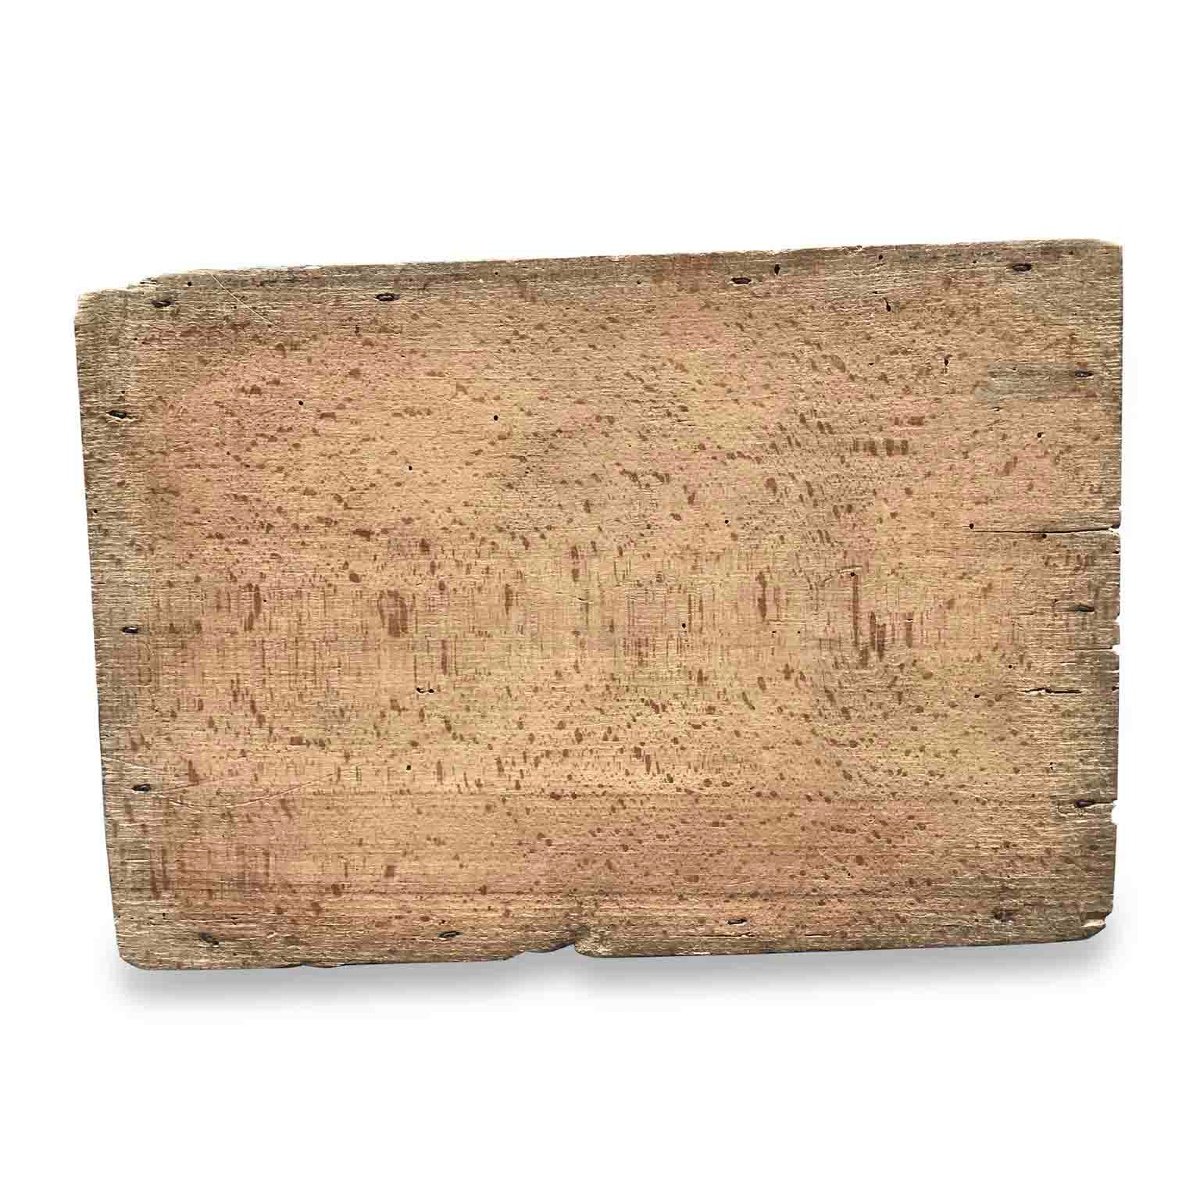 Scatola laccata del 1700-photo-1